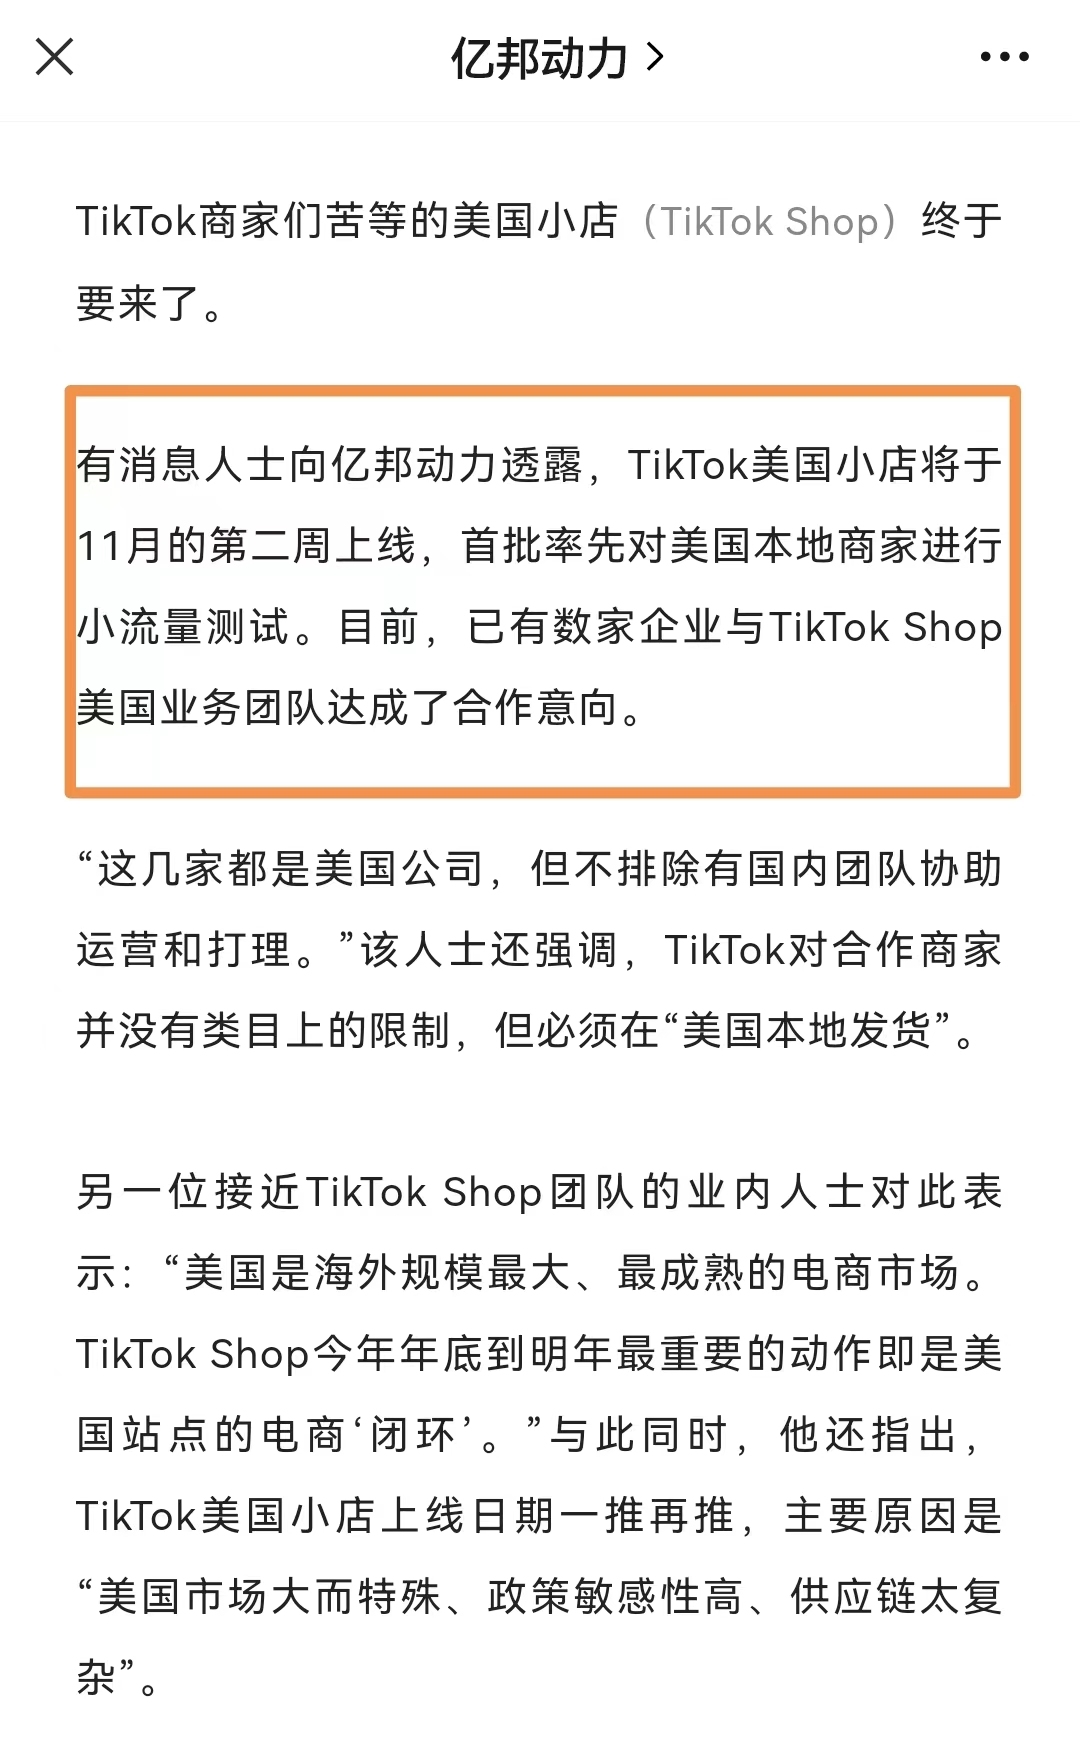 1月3日电商报/TikTok